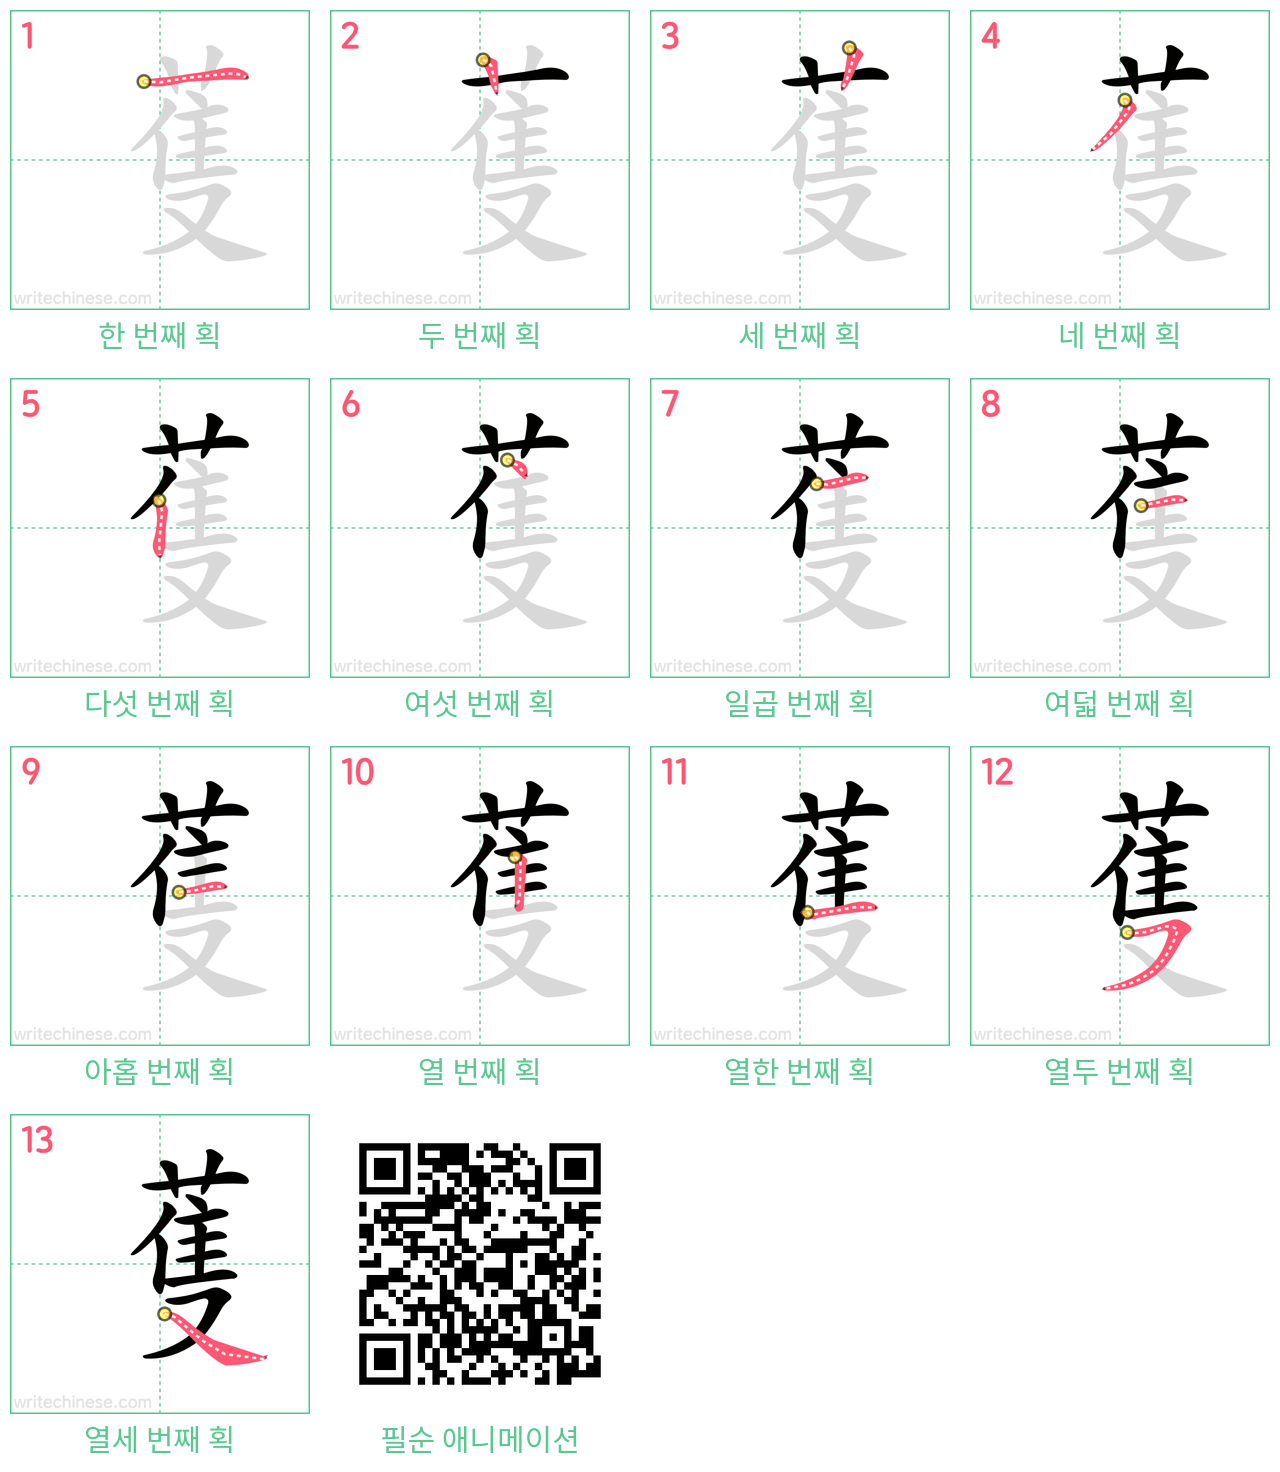 蒦 step-by-step stroke order diagrams